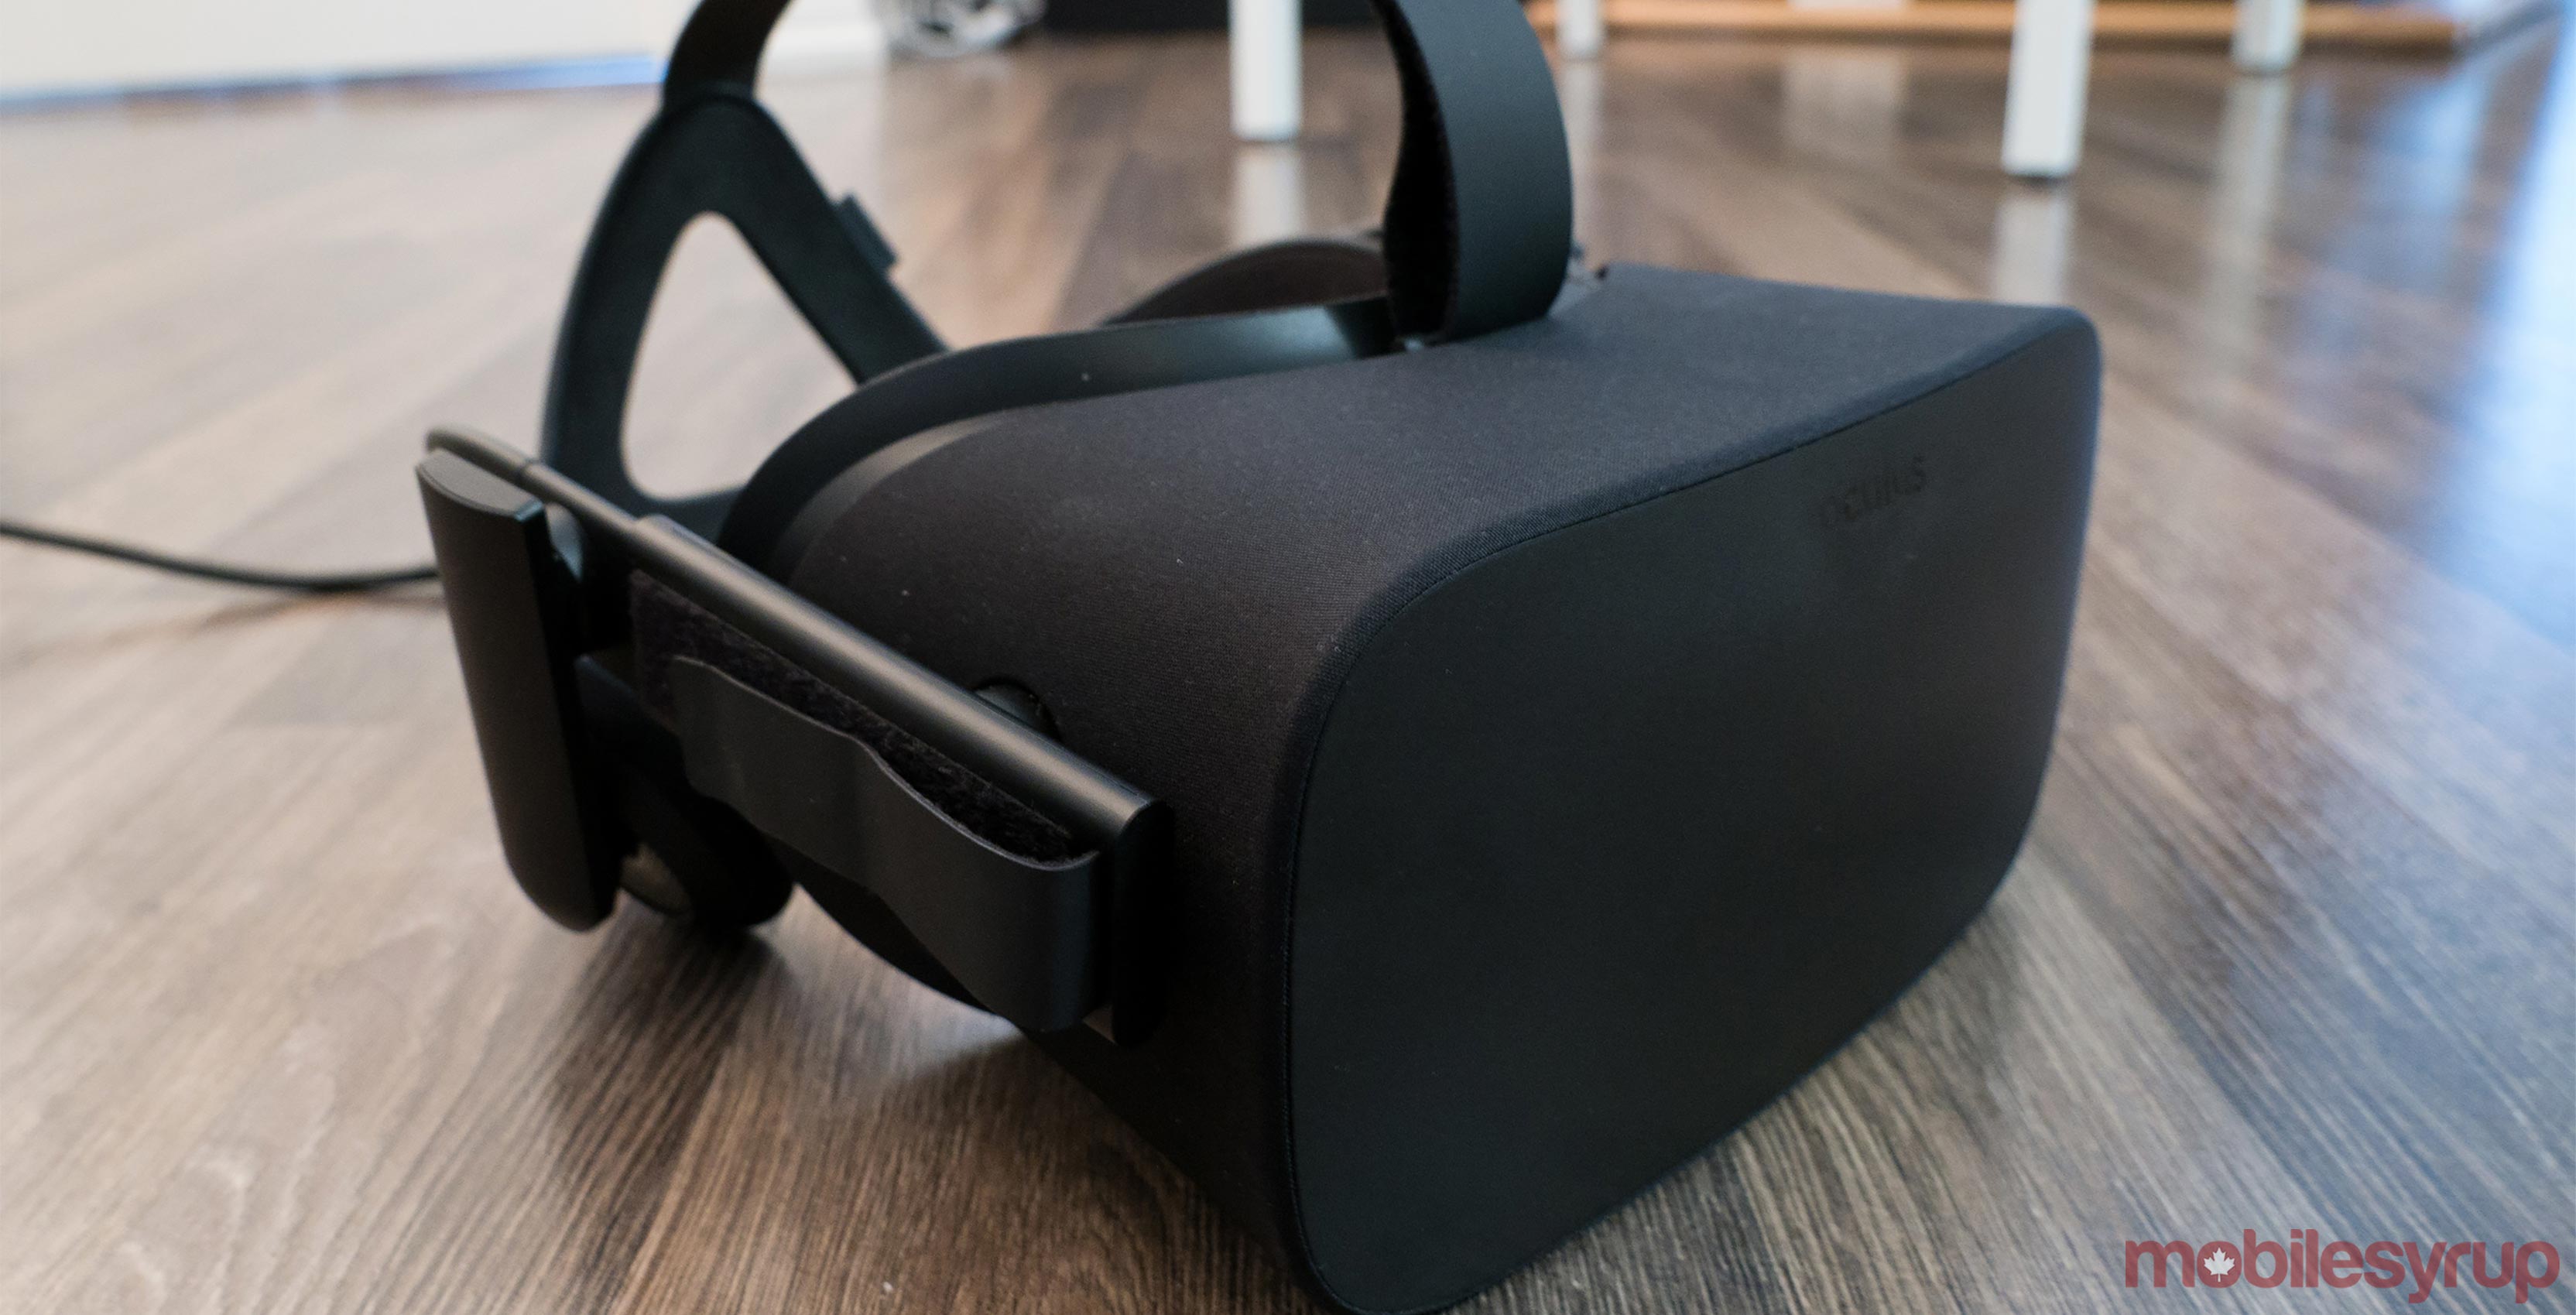 Oculus Rift headset on floor